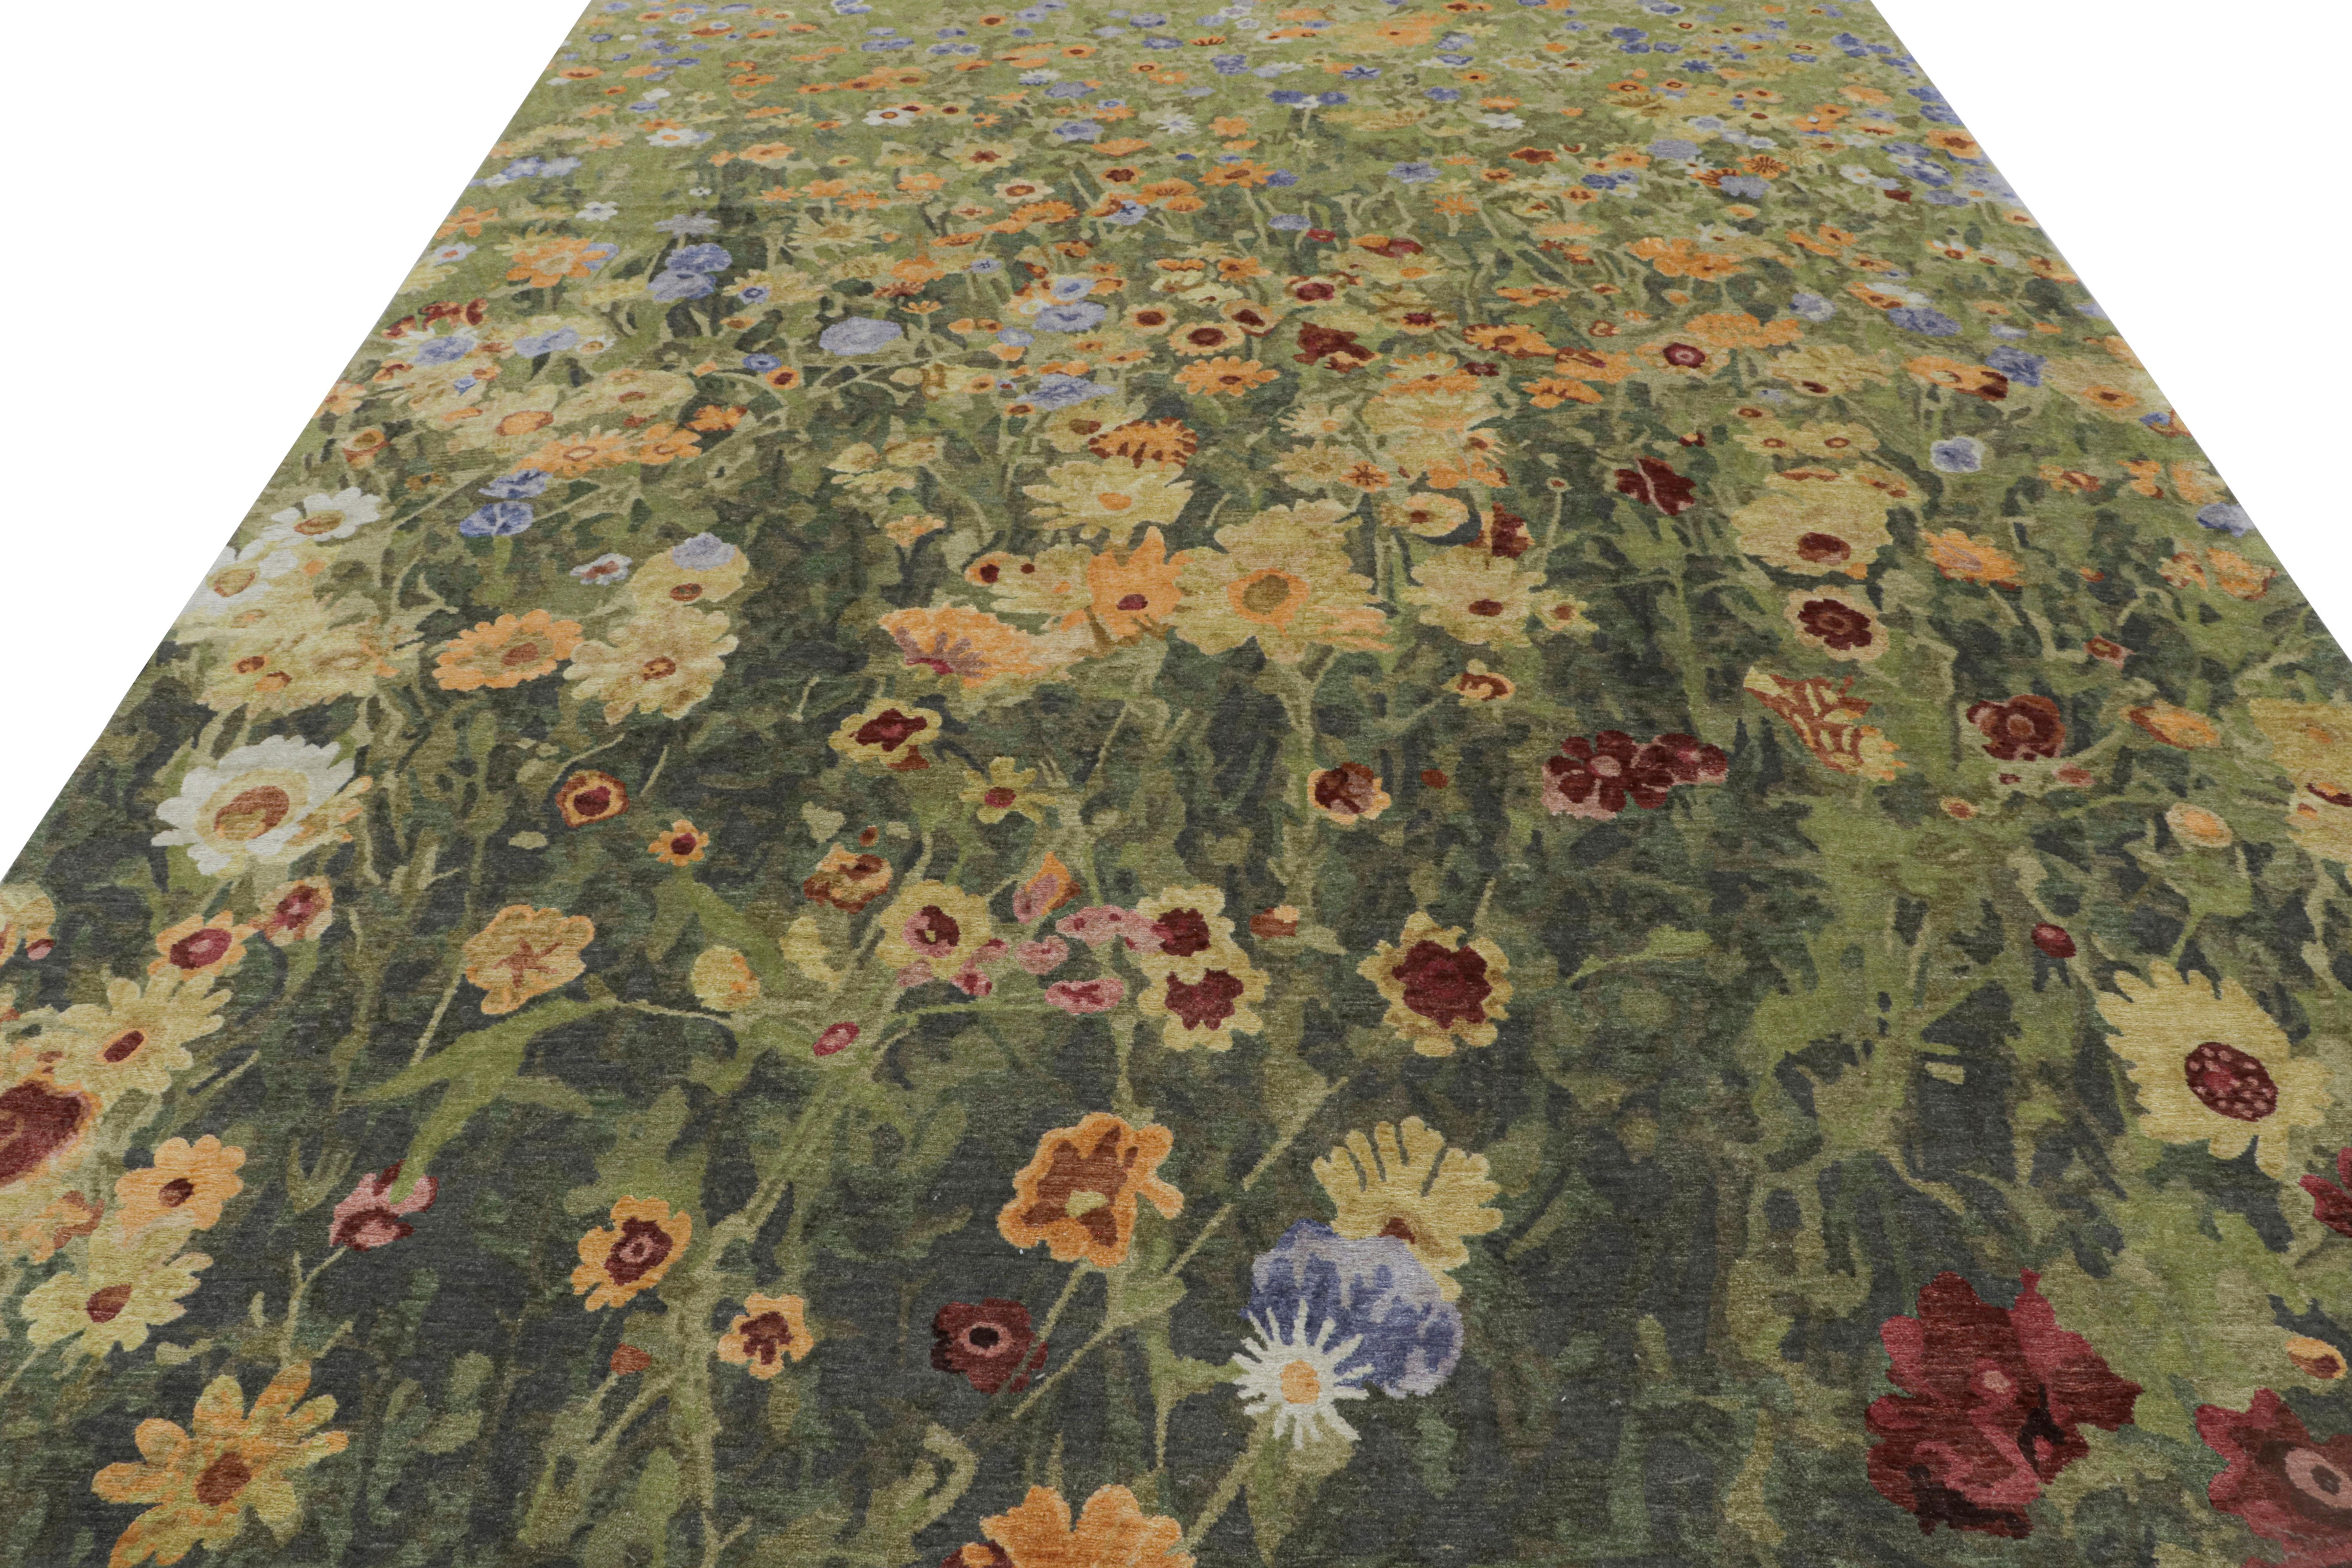 Dieser moderne, abstrakte Teppich im Format 9x12 aus Wolle und Seide wurde von Hand geknüpft. Das Design 